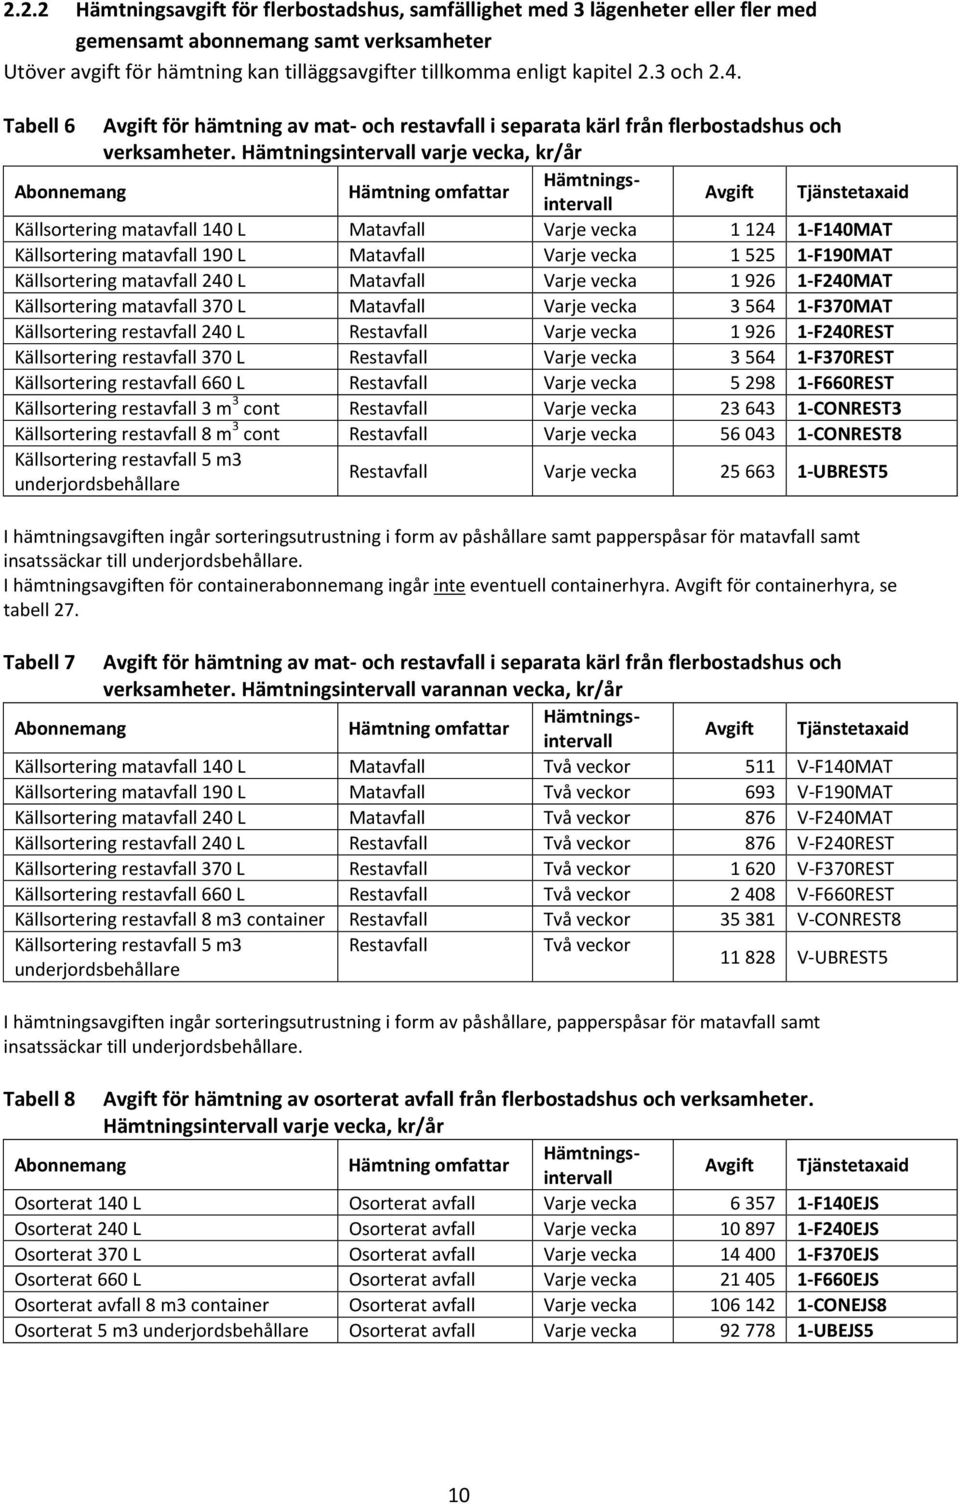 I hämtningsavgiften för containerabonnemang ingår inte eventuell containerhyra. för containerhyra, se tabell 27.